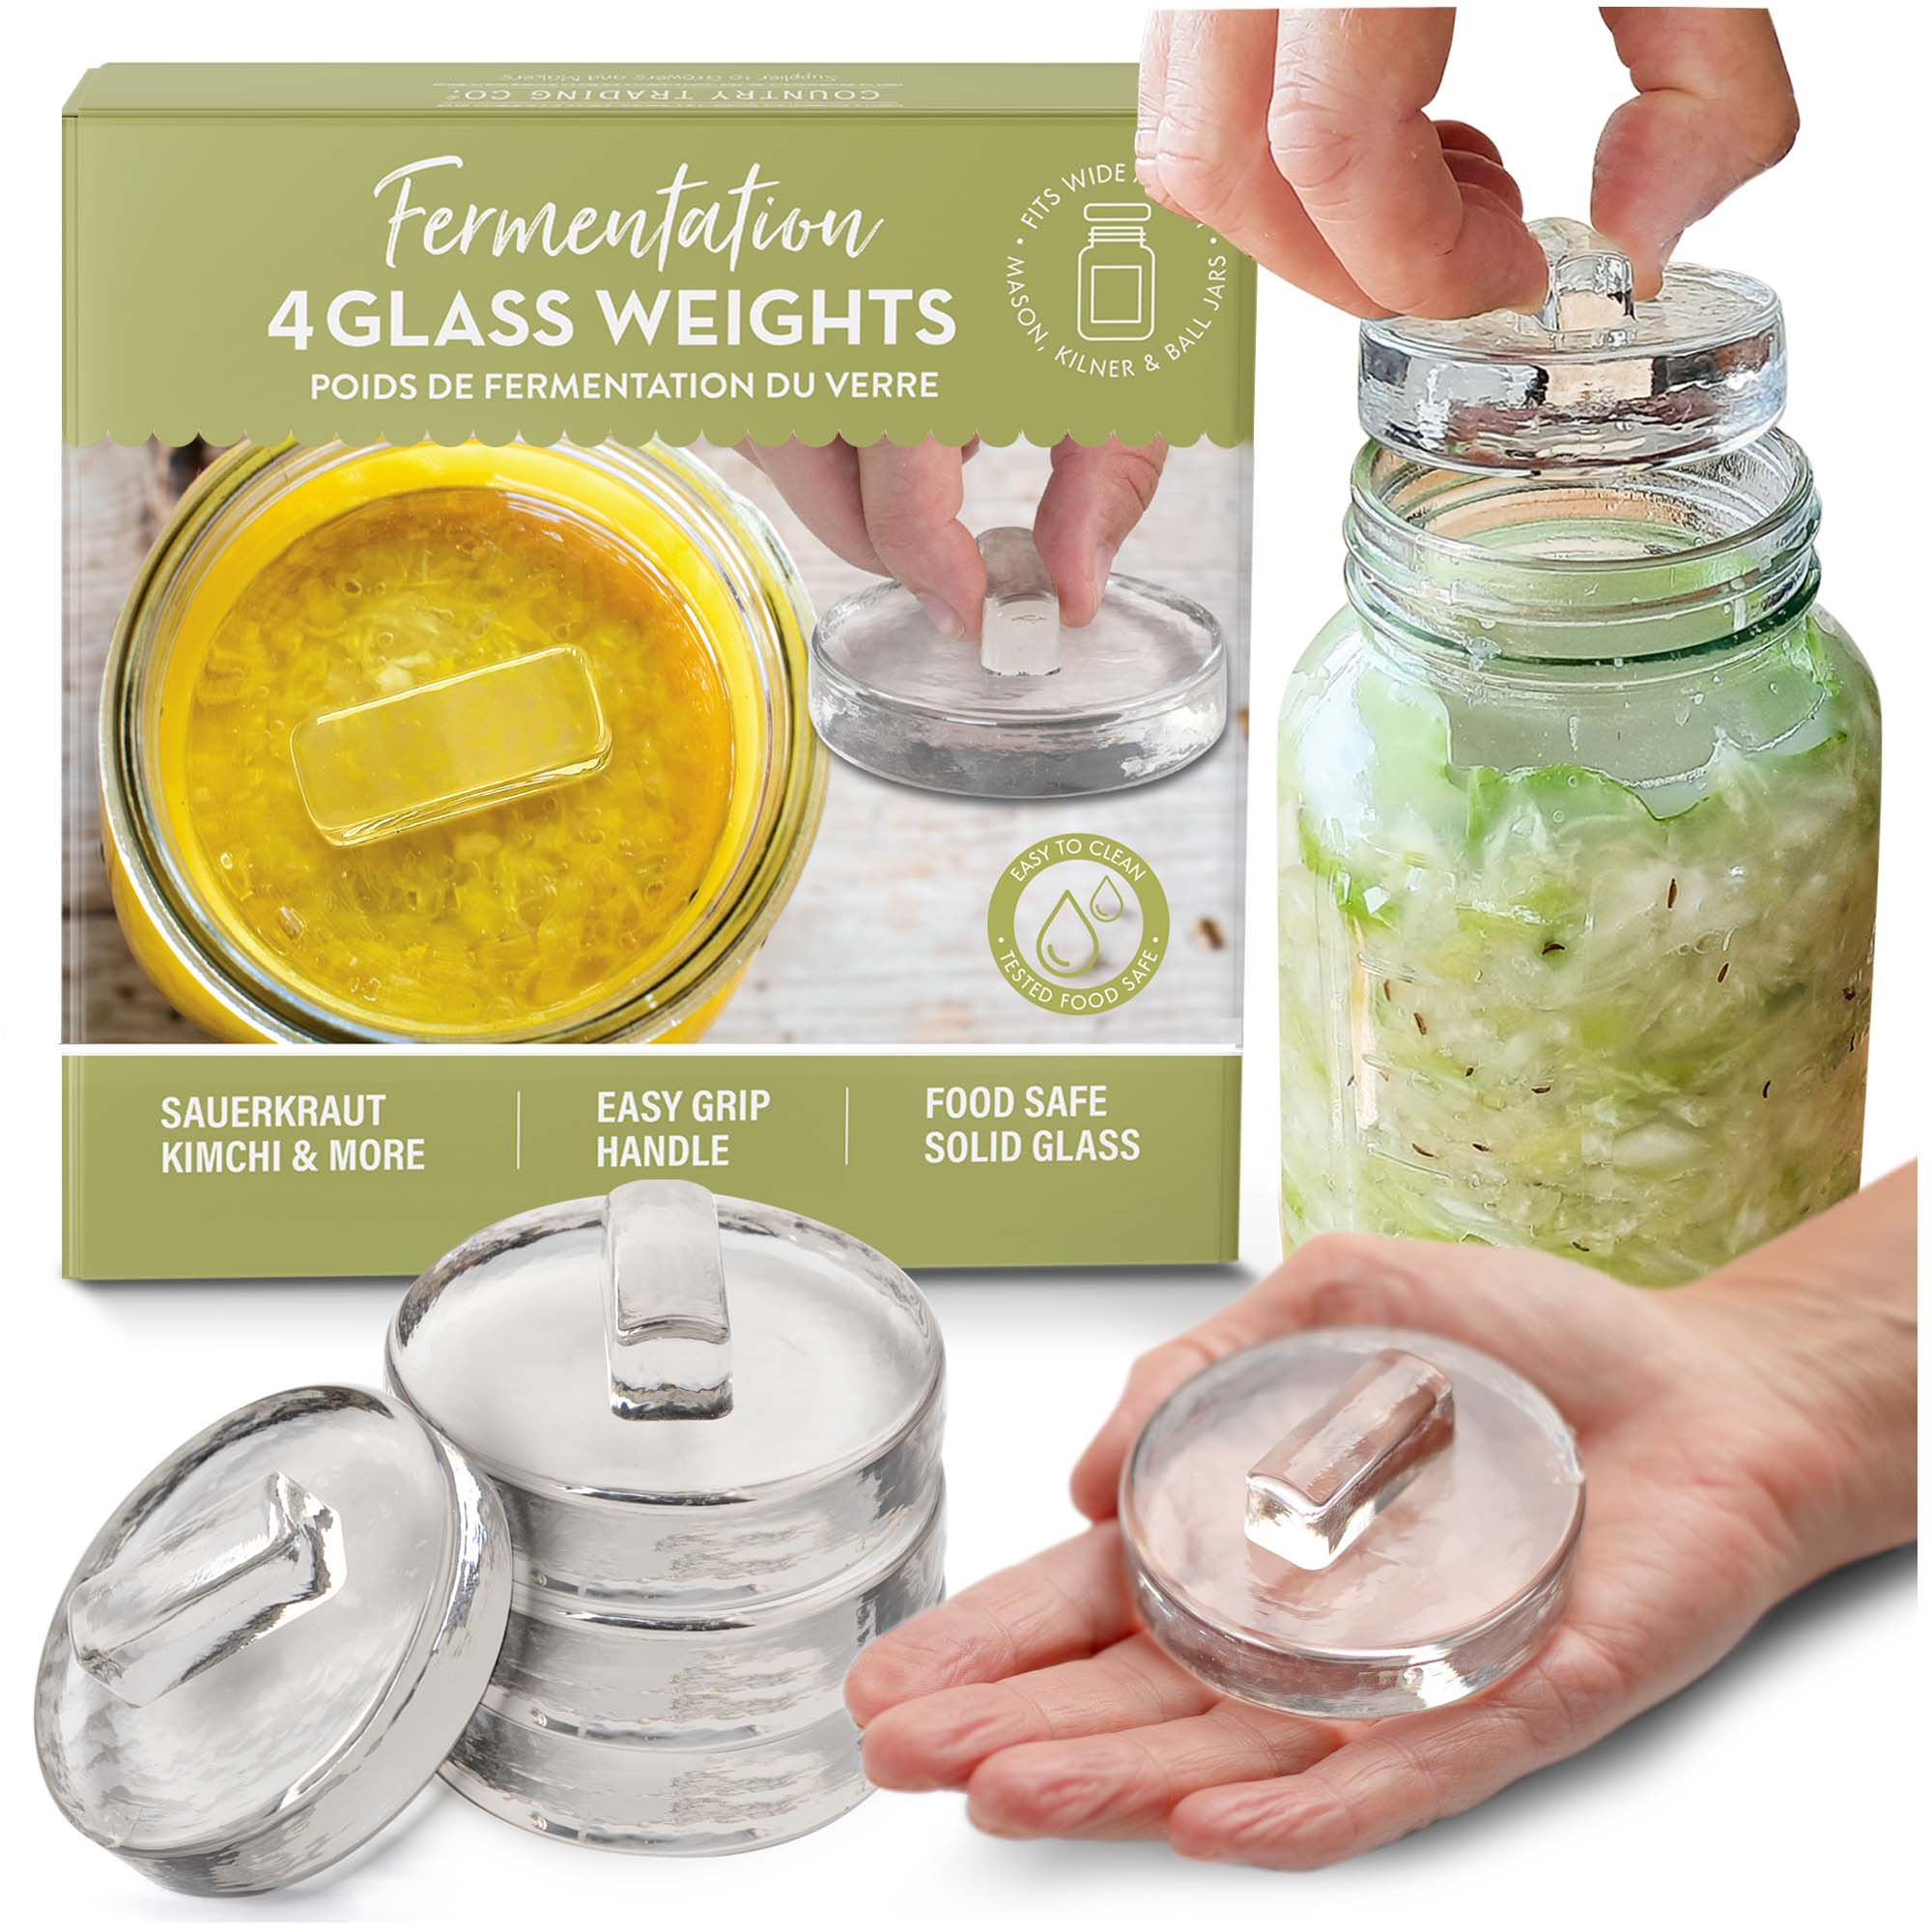 Complete DIY Mason Jar Fermentation Kit for Food & Vegetables